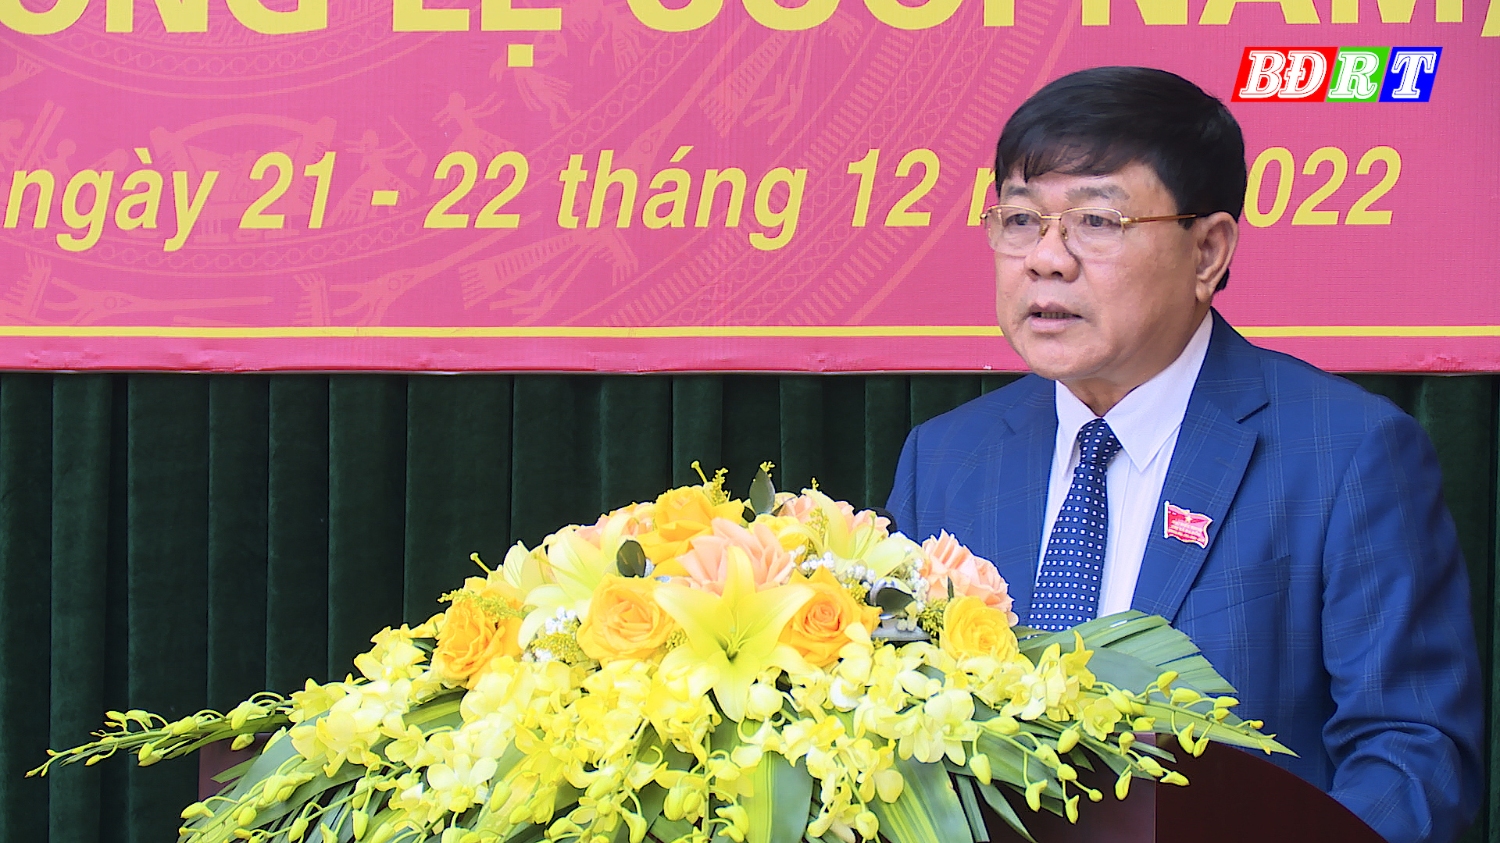 Đồng chí Đoàn Minh Thọ, Phó Bí thư Thị ủy, Chủ tịch UBND thị xã đã phát biểu tại kỳ họp